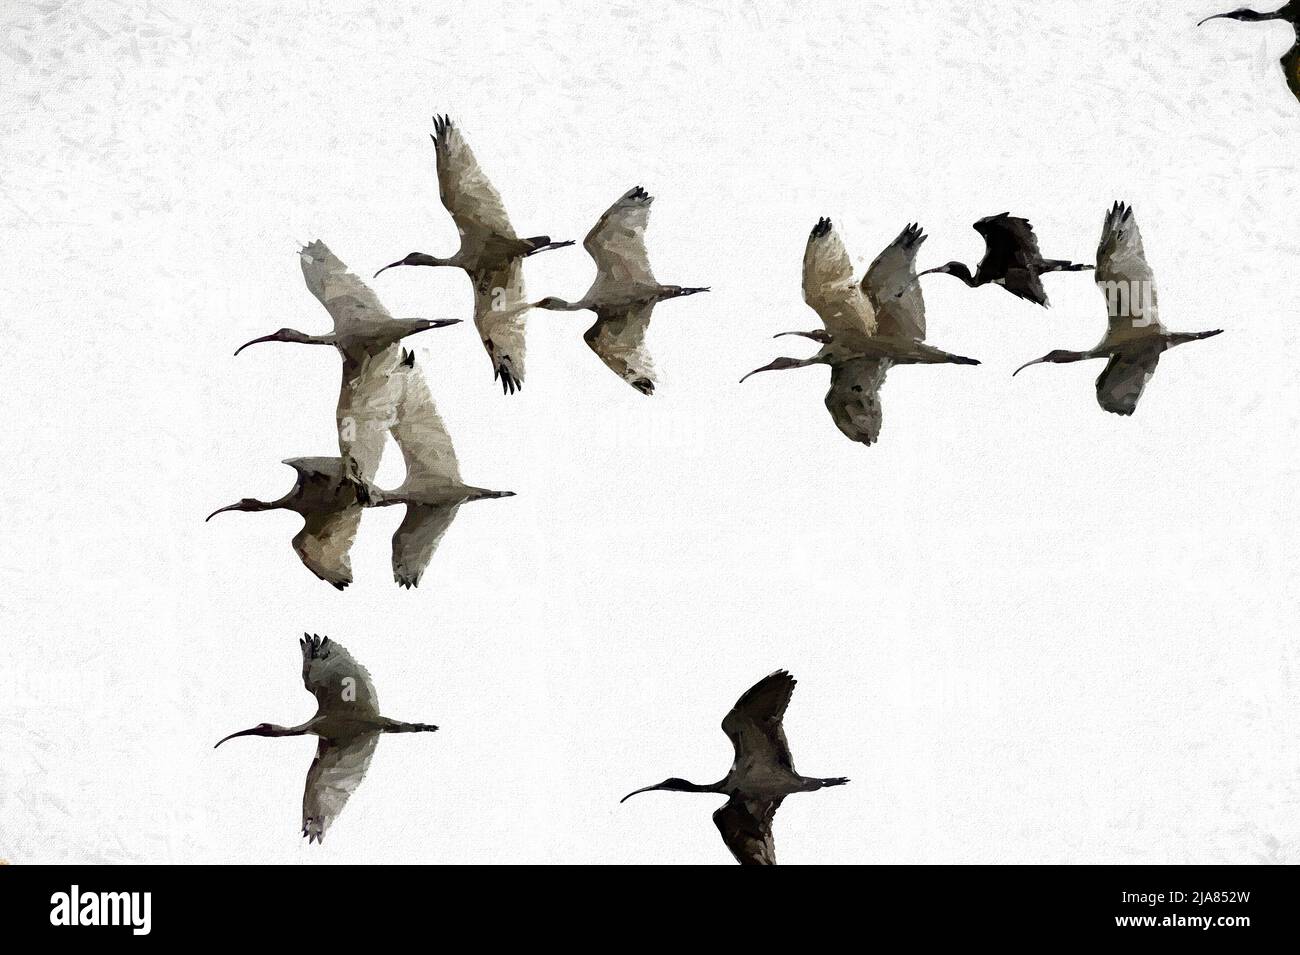 Eine Vogelschar fliegt in Einem Illustrationsmalformat zusammen Stockfoto